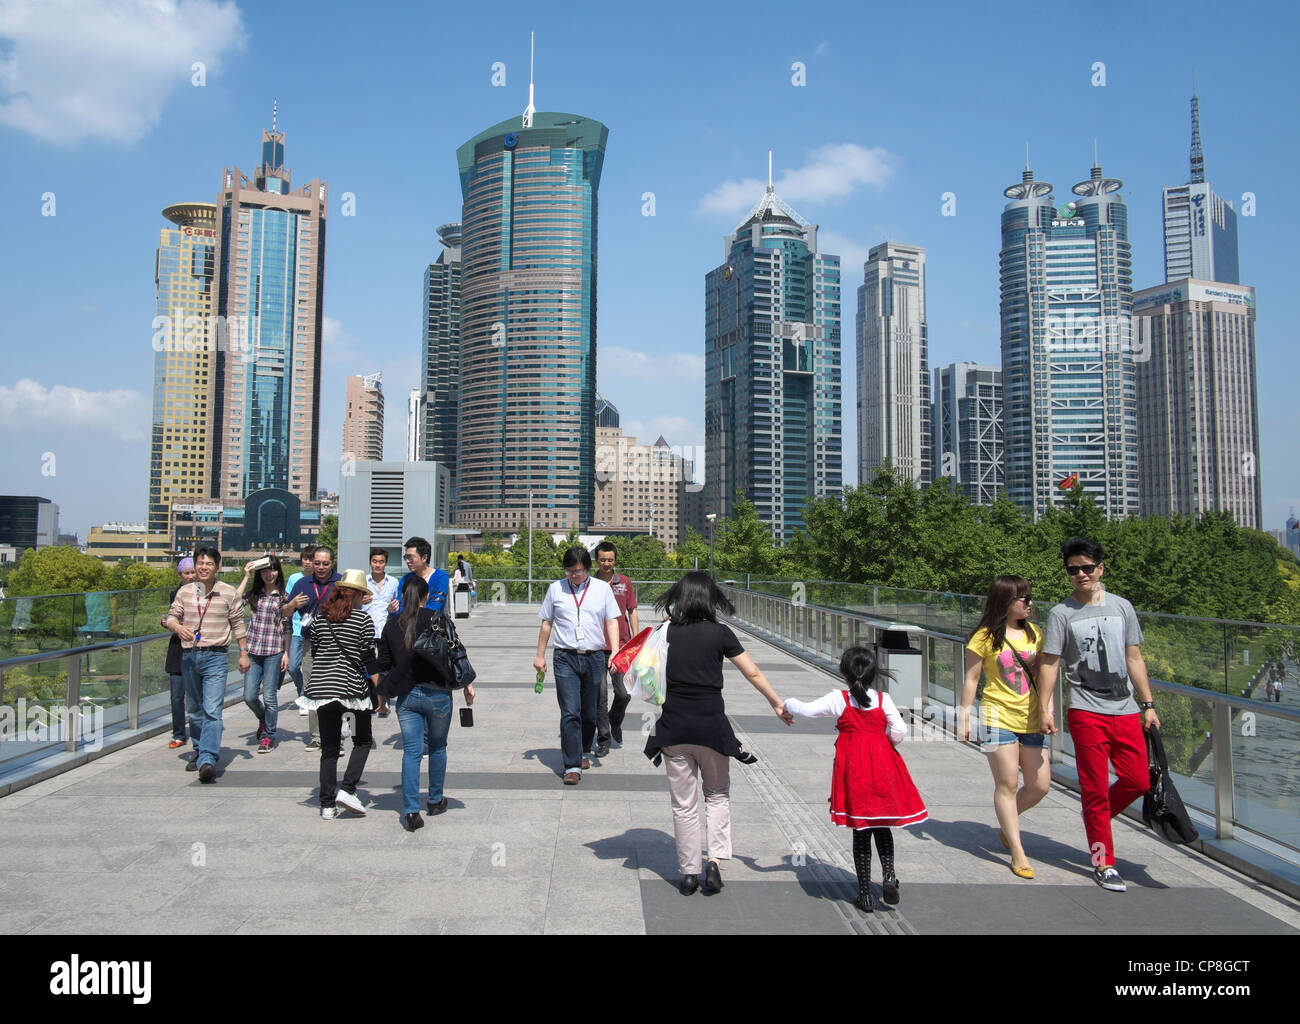 La gente caminando en pasarela con horizonte de rascacielos en el distrito de Lujiazui de Pudong en Shanghai, China Foto de stock